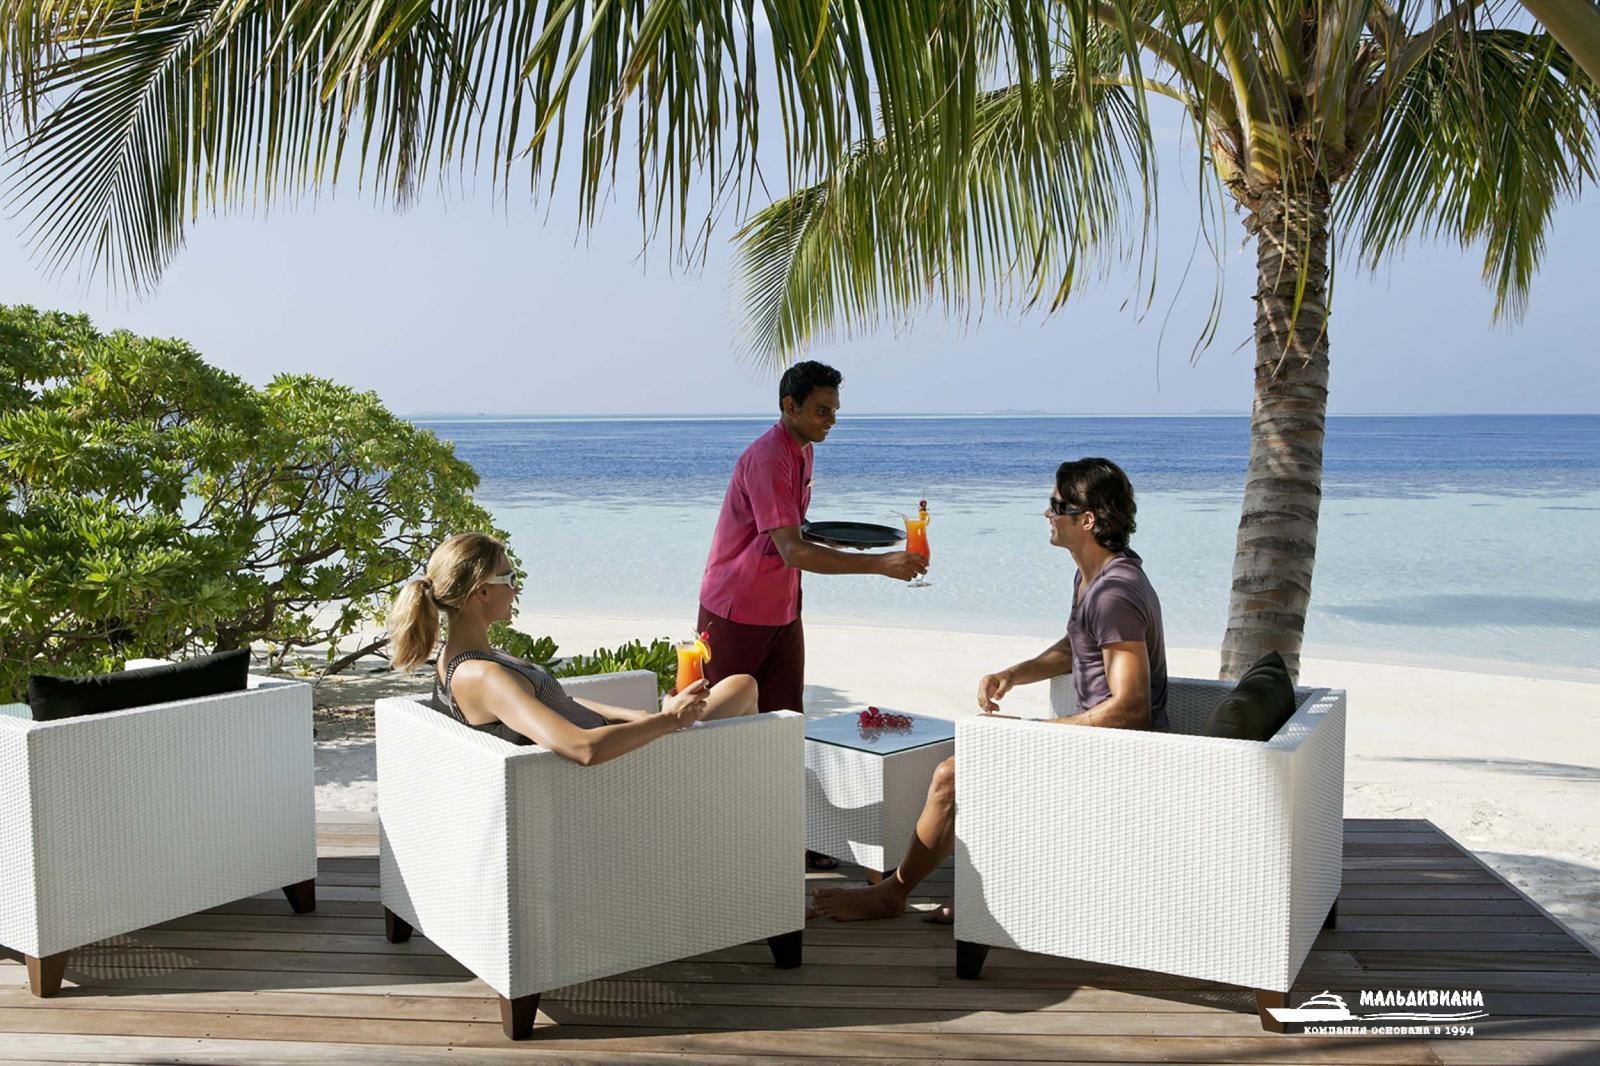 Vilamendhoo island resort. Vilamendhoo 4 Мальдивы. Виламенду отель Мальдивы. Отель Мальдивы Vilamendhoo Island Resort and Spa. Остров Дангети Мальдивы.